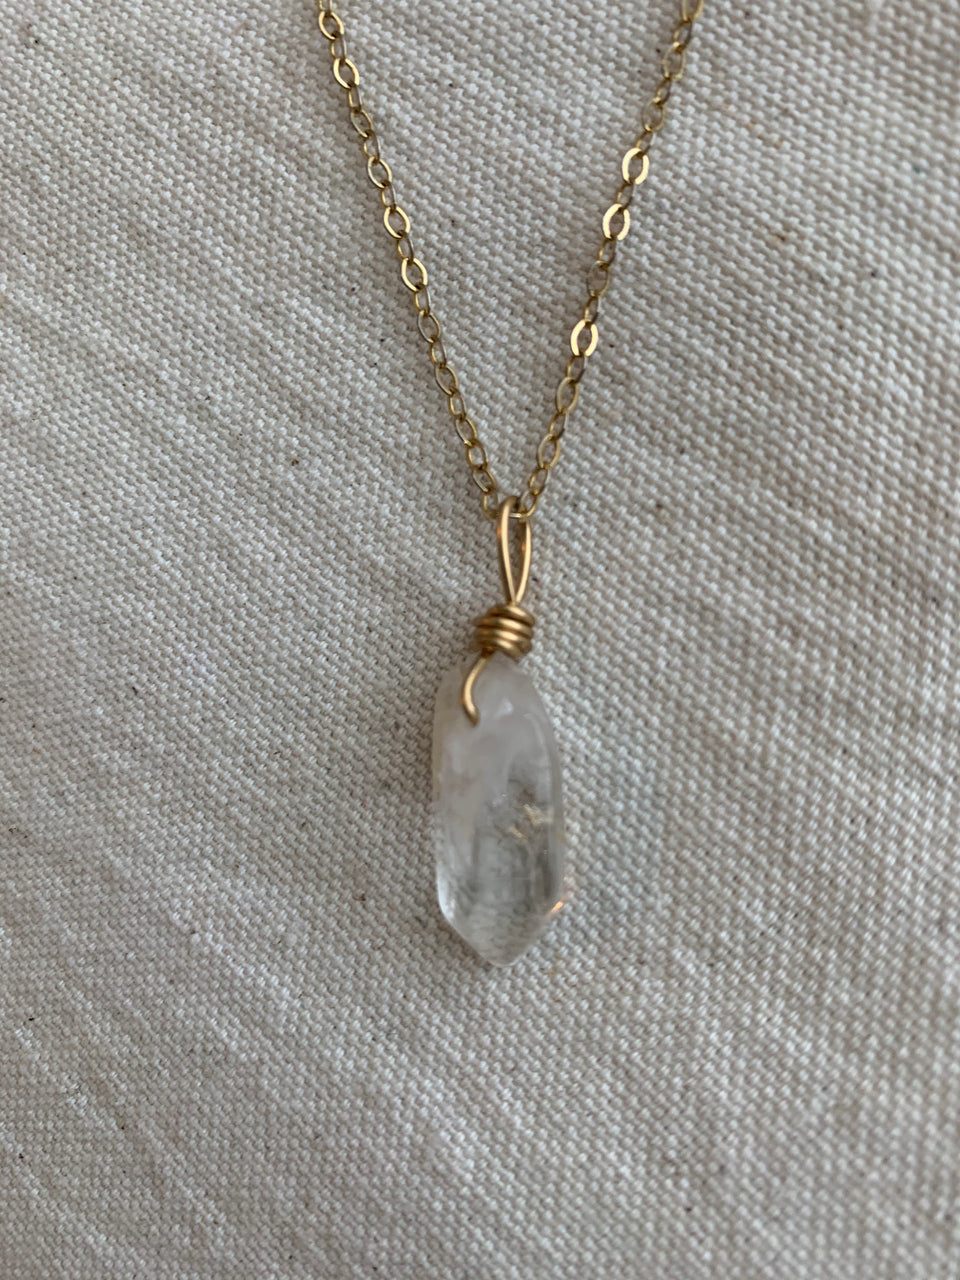 Clear quartz charm necklace